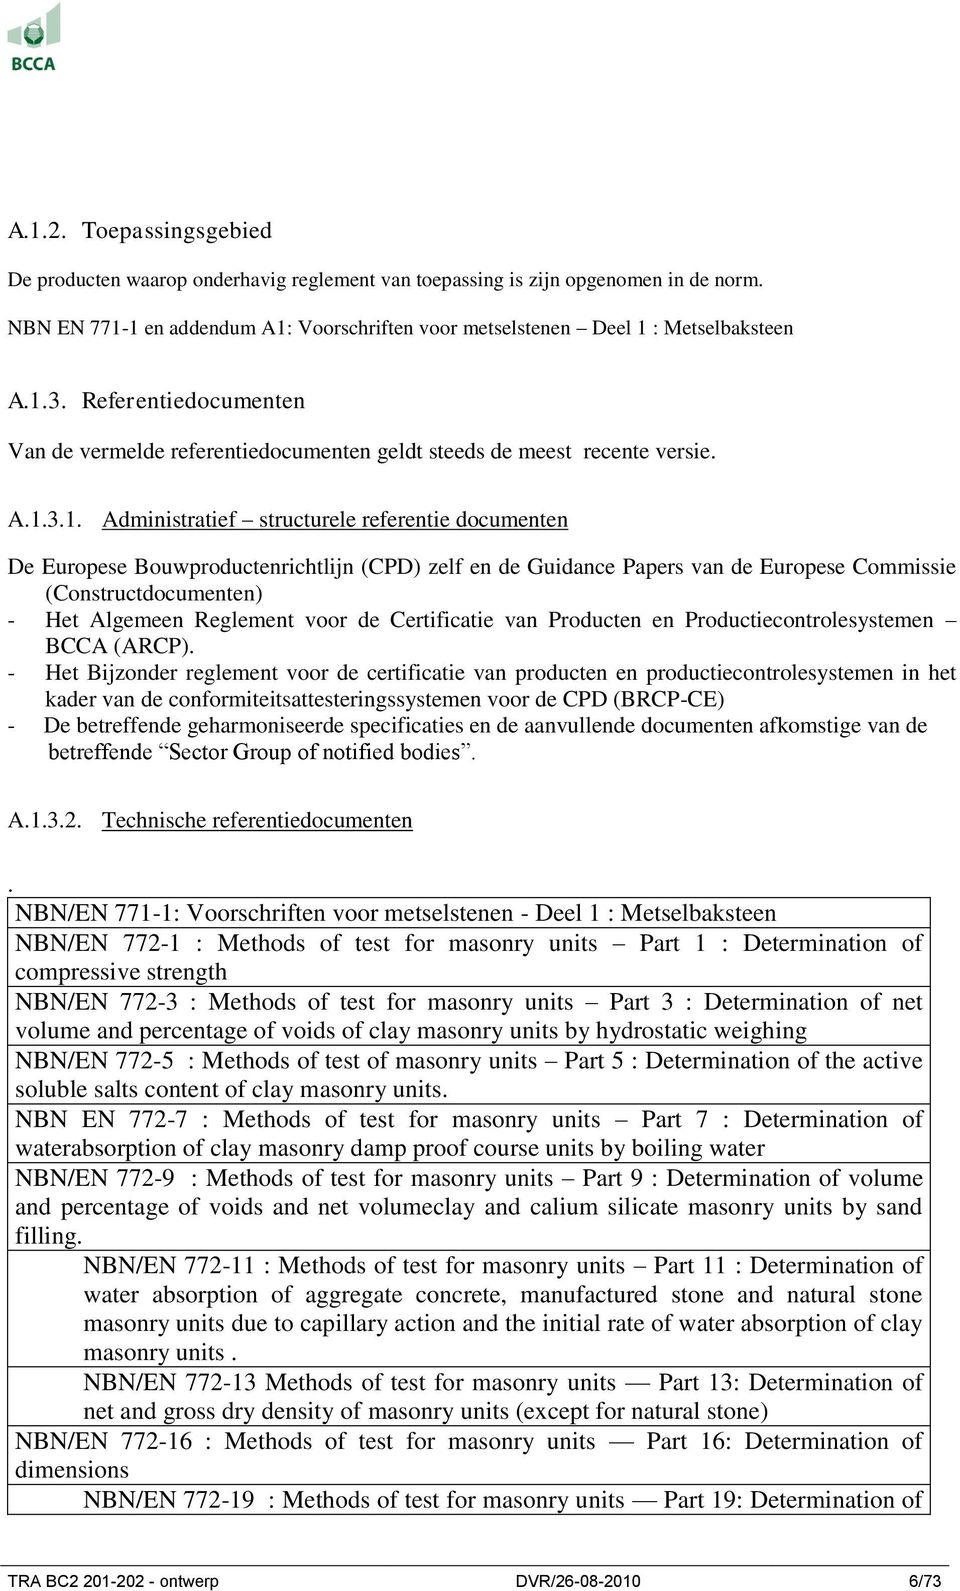 3.1. Administratief structurele referentie documenten De Europese Bouwproductenrichtlijn (CPD) zelf en de Guidance Papers van de Europese Commissie (Constructdocumenten) - Het Algemeen Reglement voor